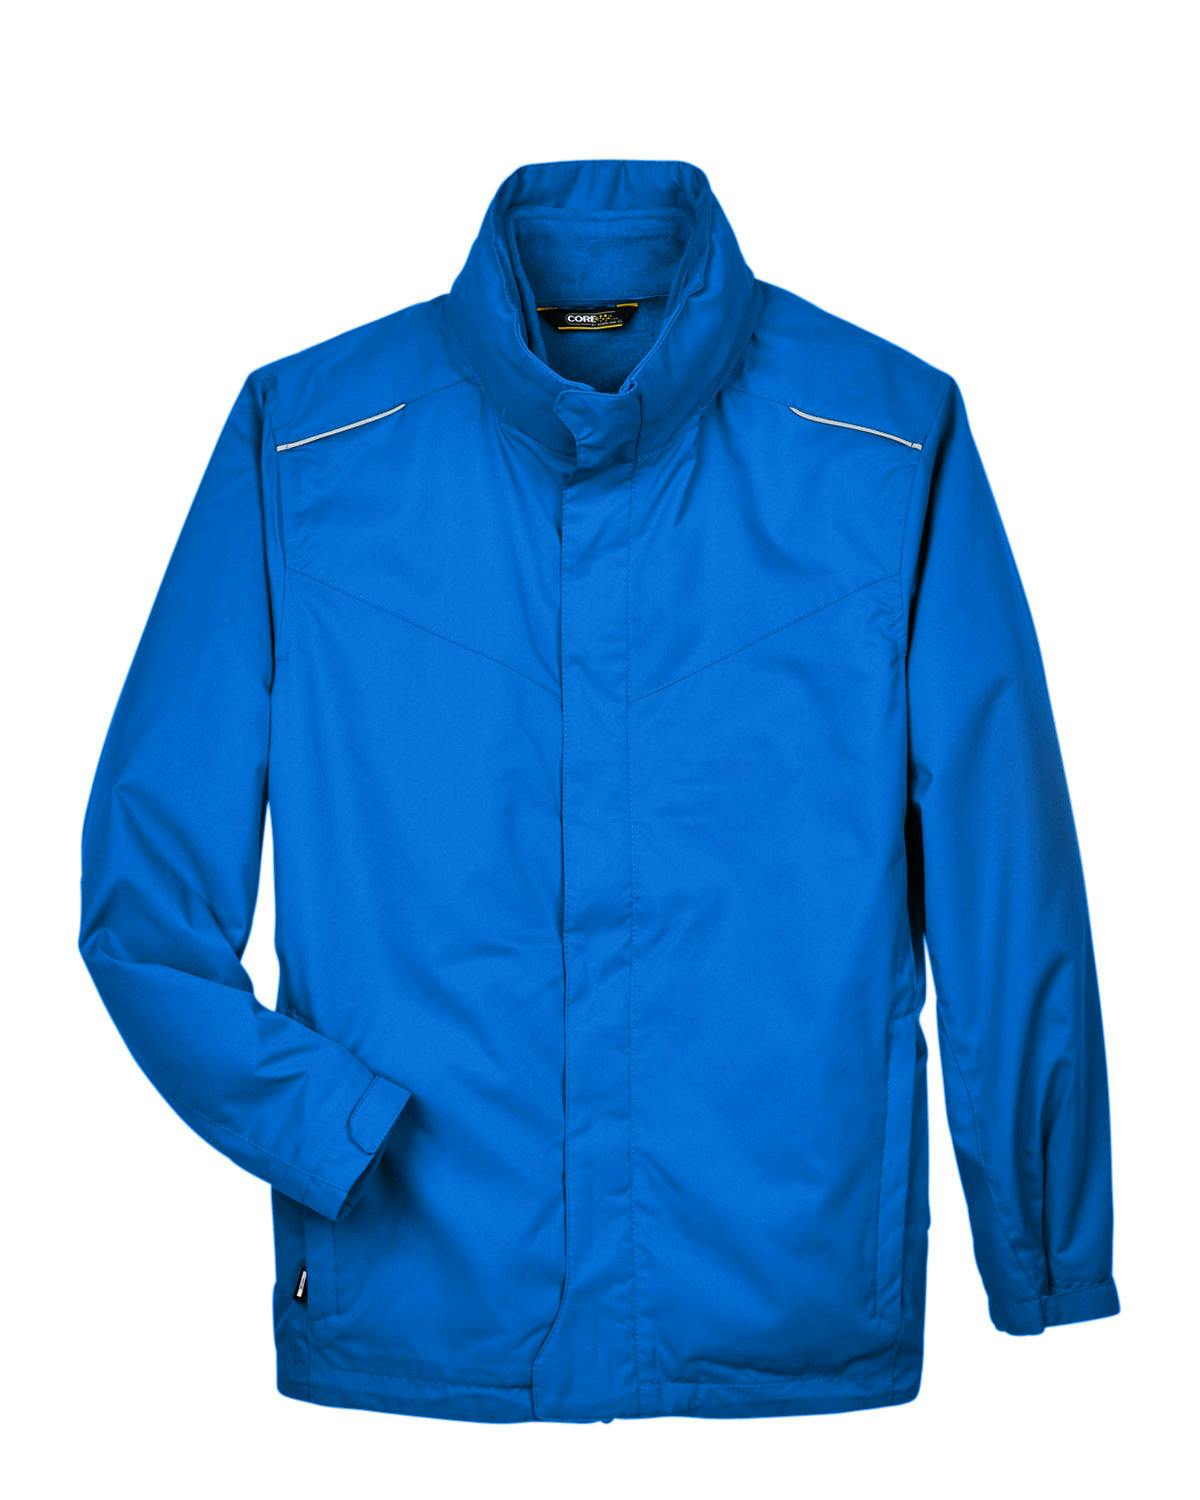 Image for Men's Region 3-in-1 Jacket with Fleece Liner